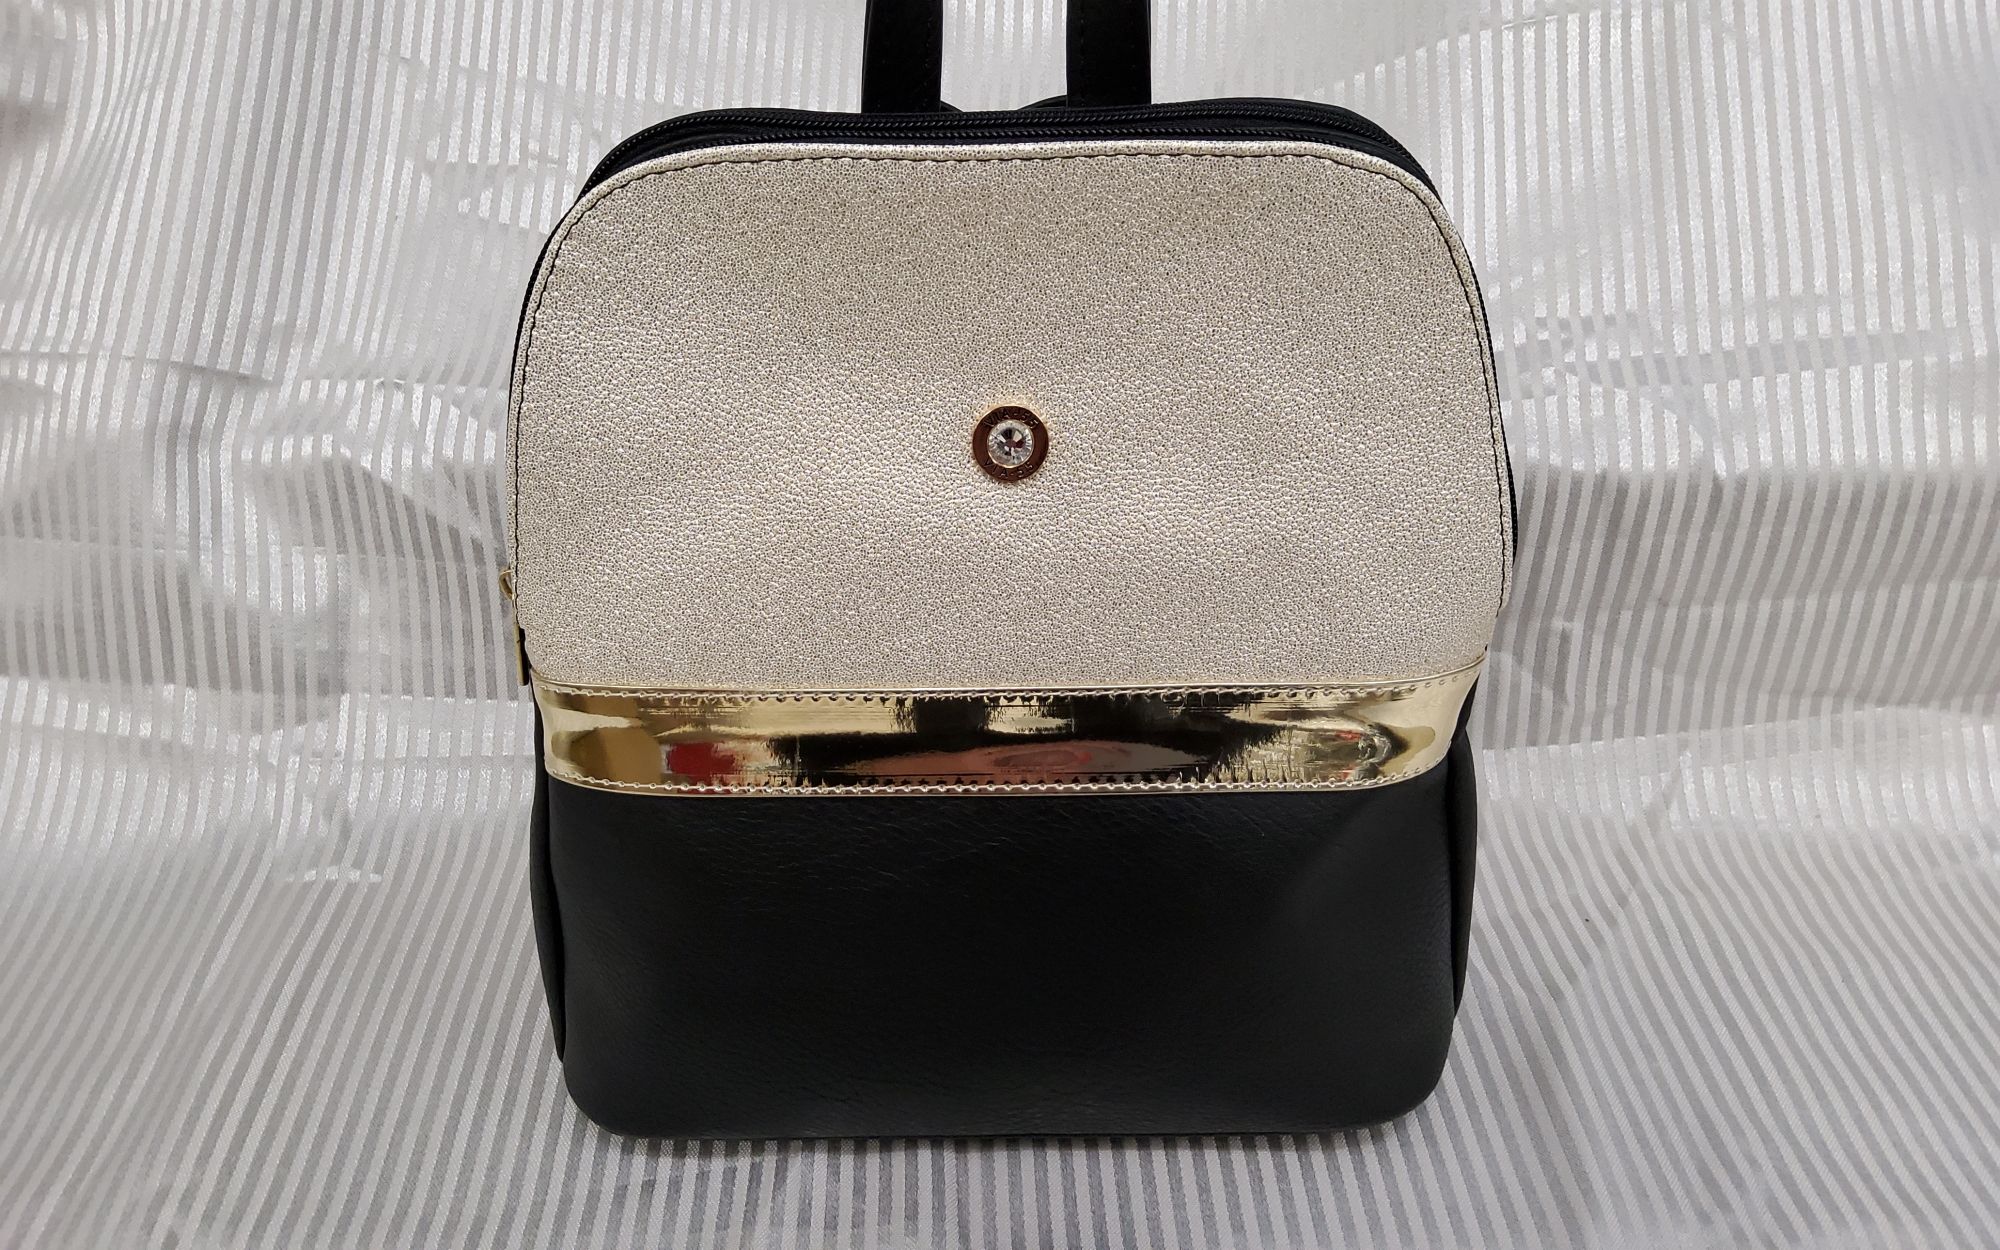 Divat hátizsák 1541 fekete-arany mini